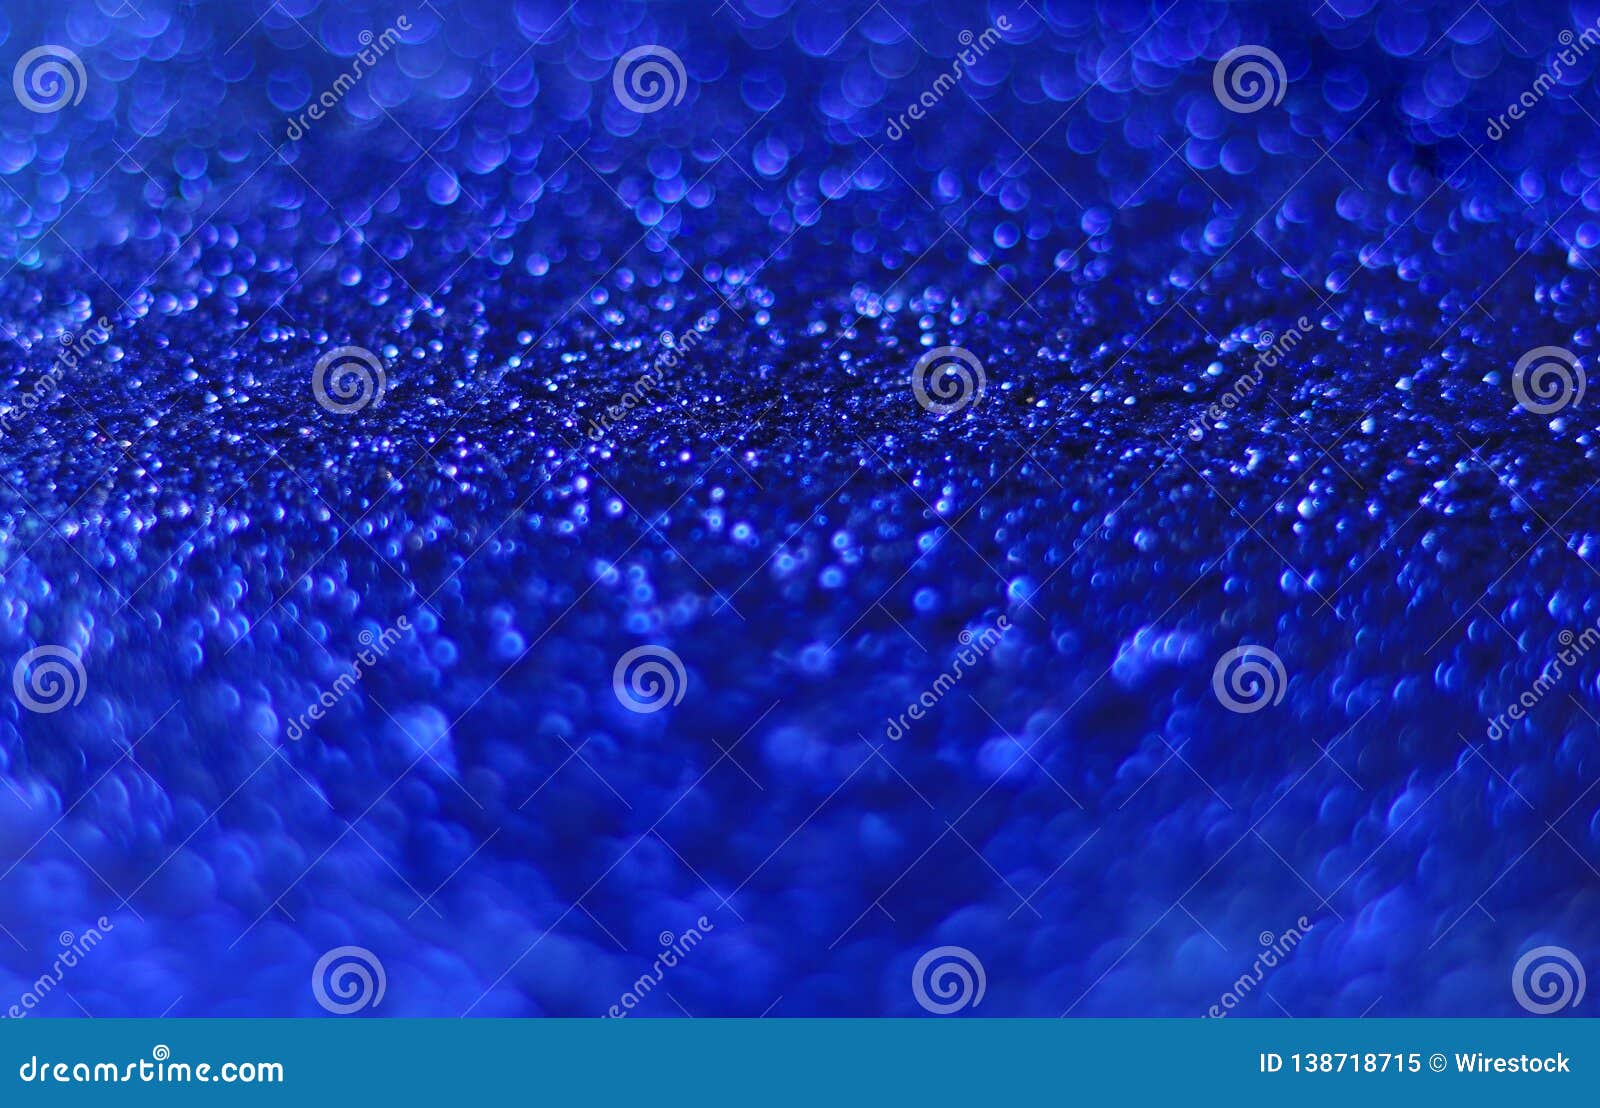 Blue Shiny Aesthetic Background Stock Image - Image of stars, shiny:  138718715